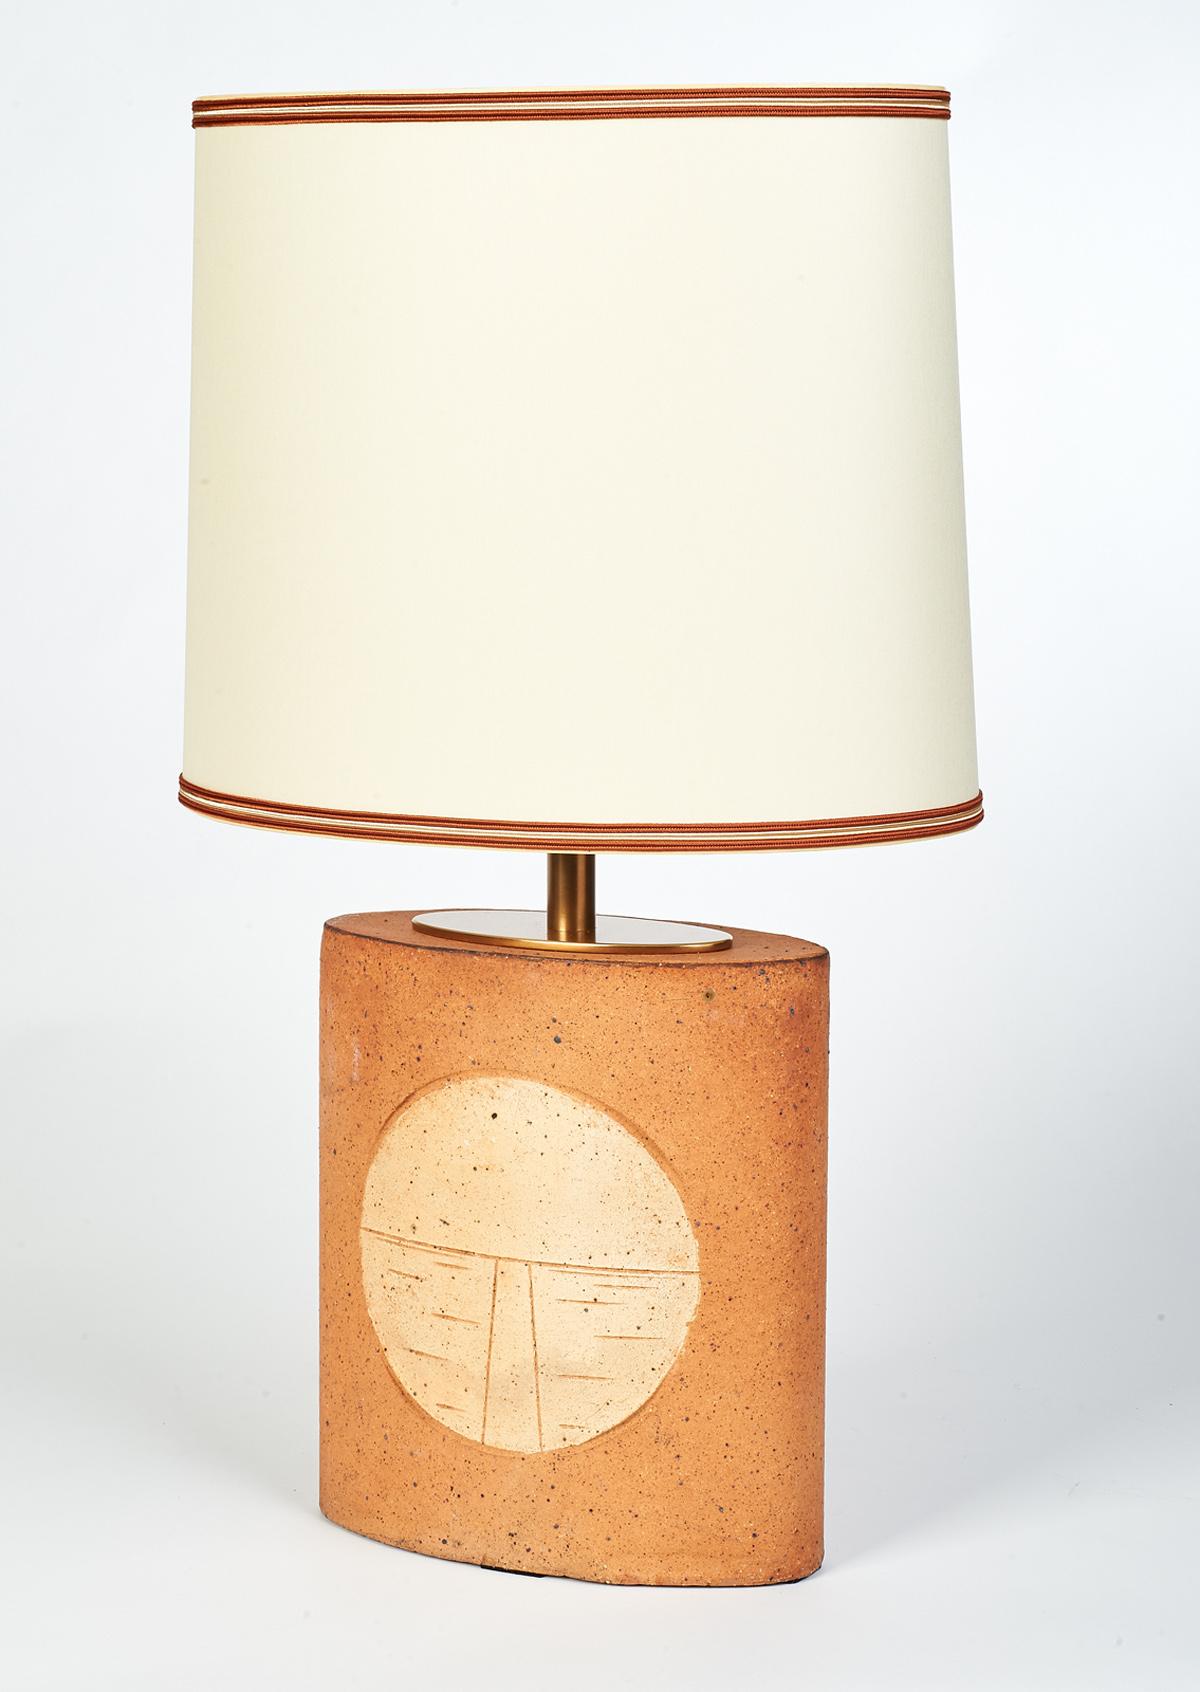 Frankreich, 1970er Jahre
Ein Paar unglasierte ovale Keramik-Tischlampen mit abstrakten geometrischen Motiven.
Die andere Lampe des Paares ist das gleiche Modell, aber mit einem anderen geometrischen Motiv  (siehe die letzten beiden Bilder)
Einzeln